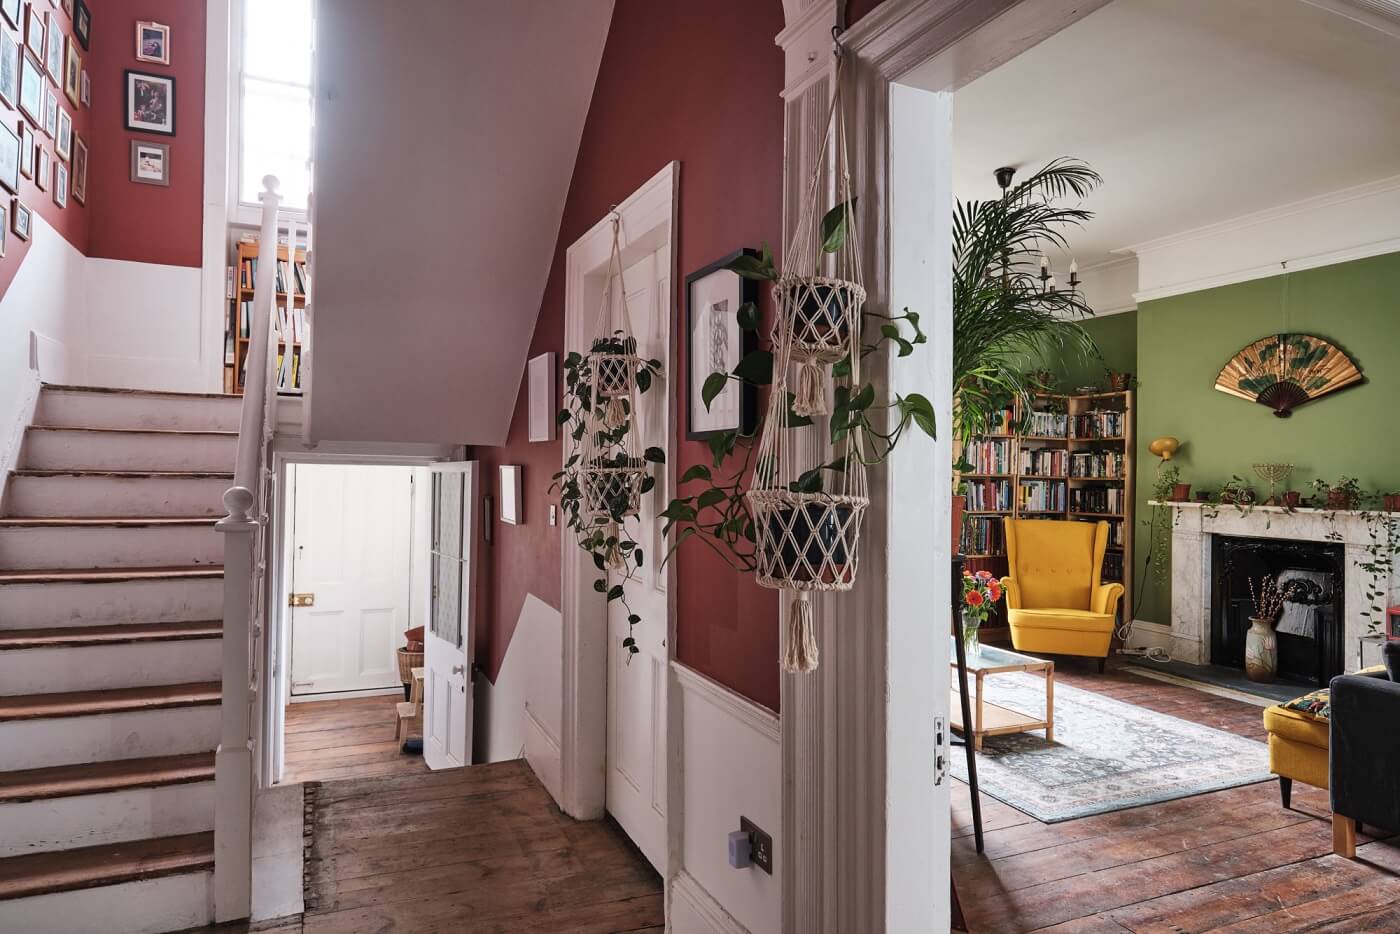 hallway-wooden-floor-red-walls-green-living-room-nordroom